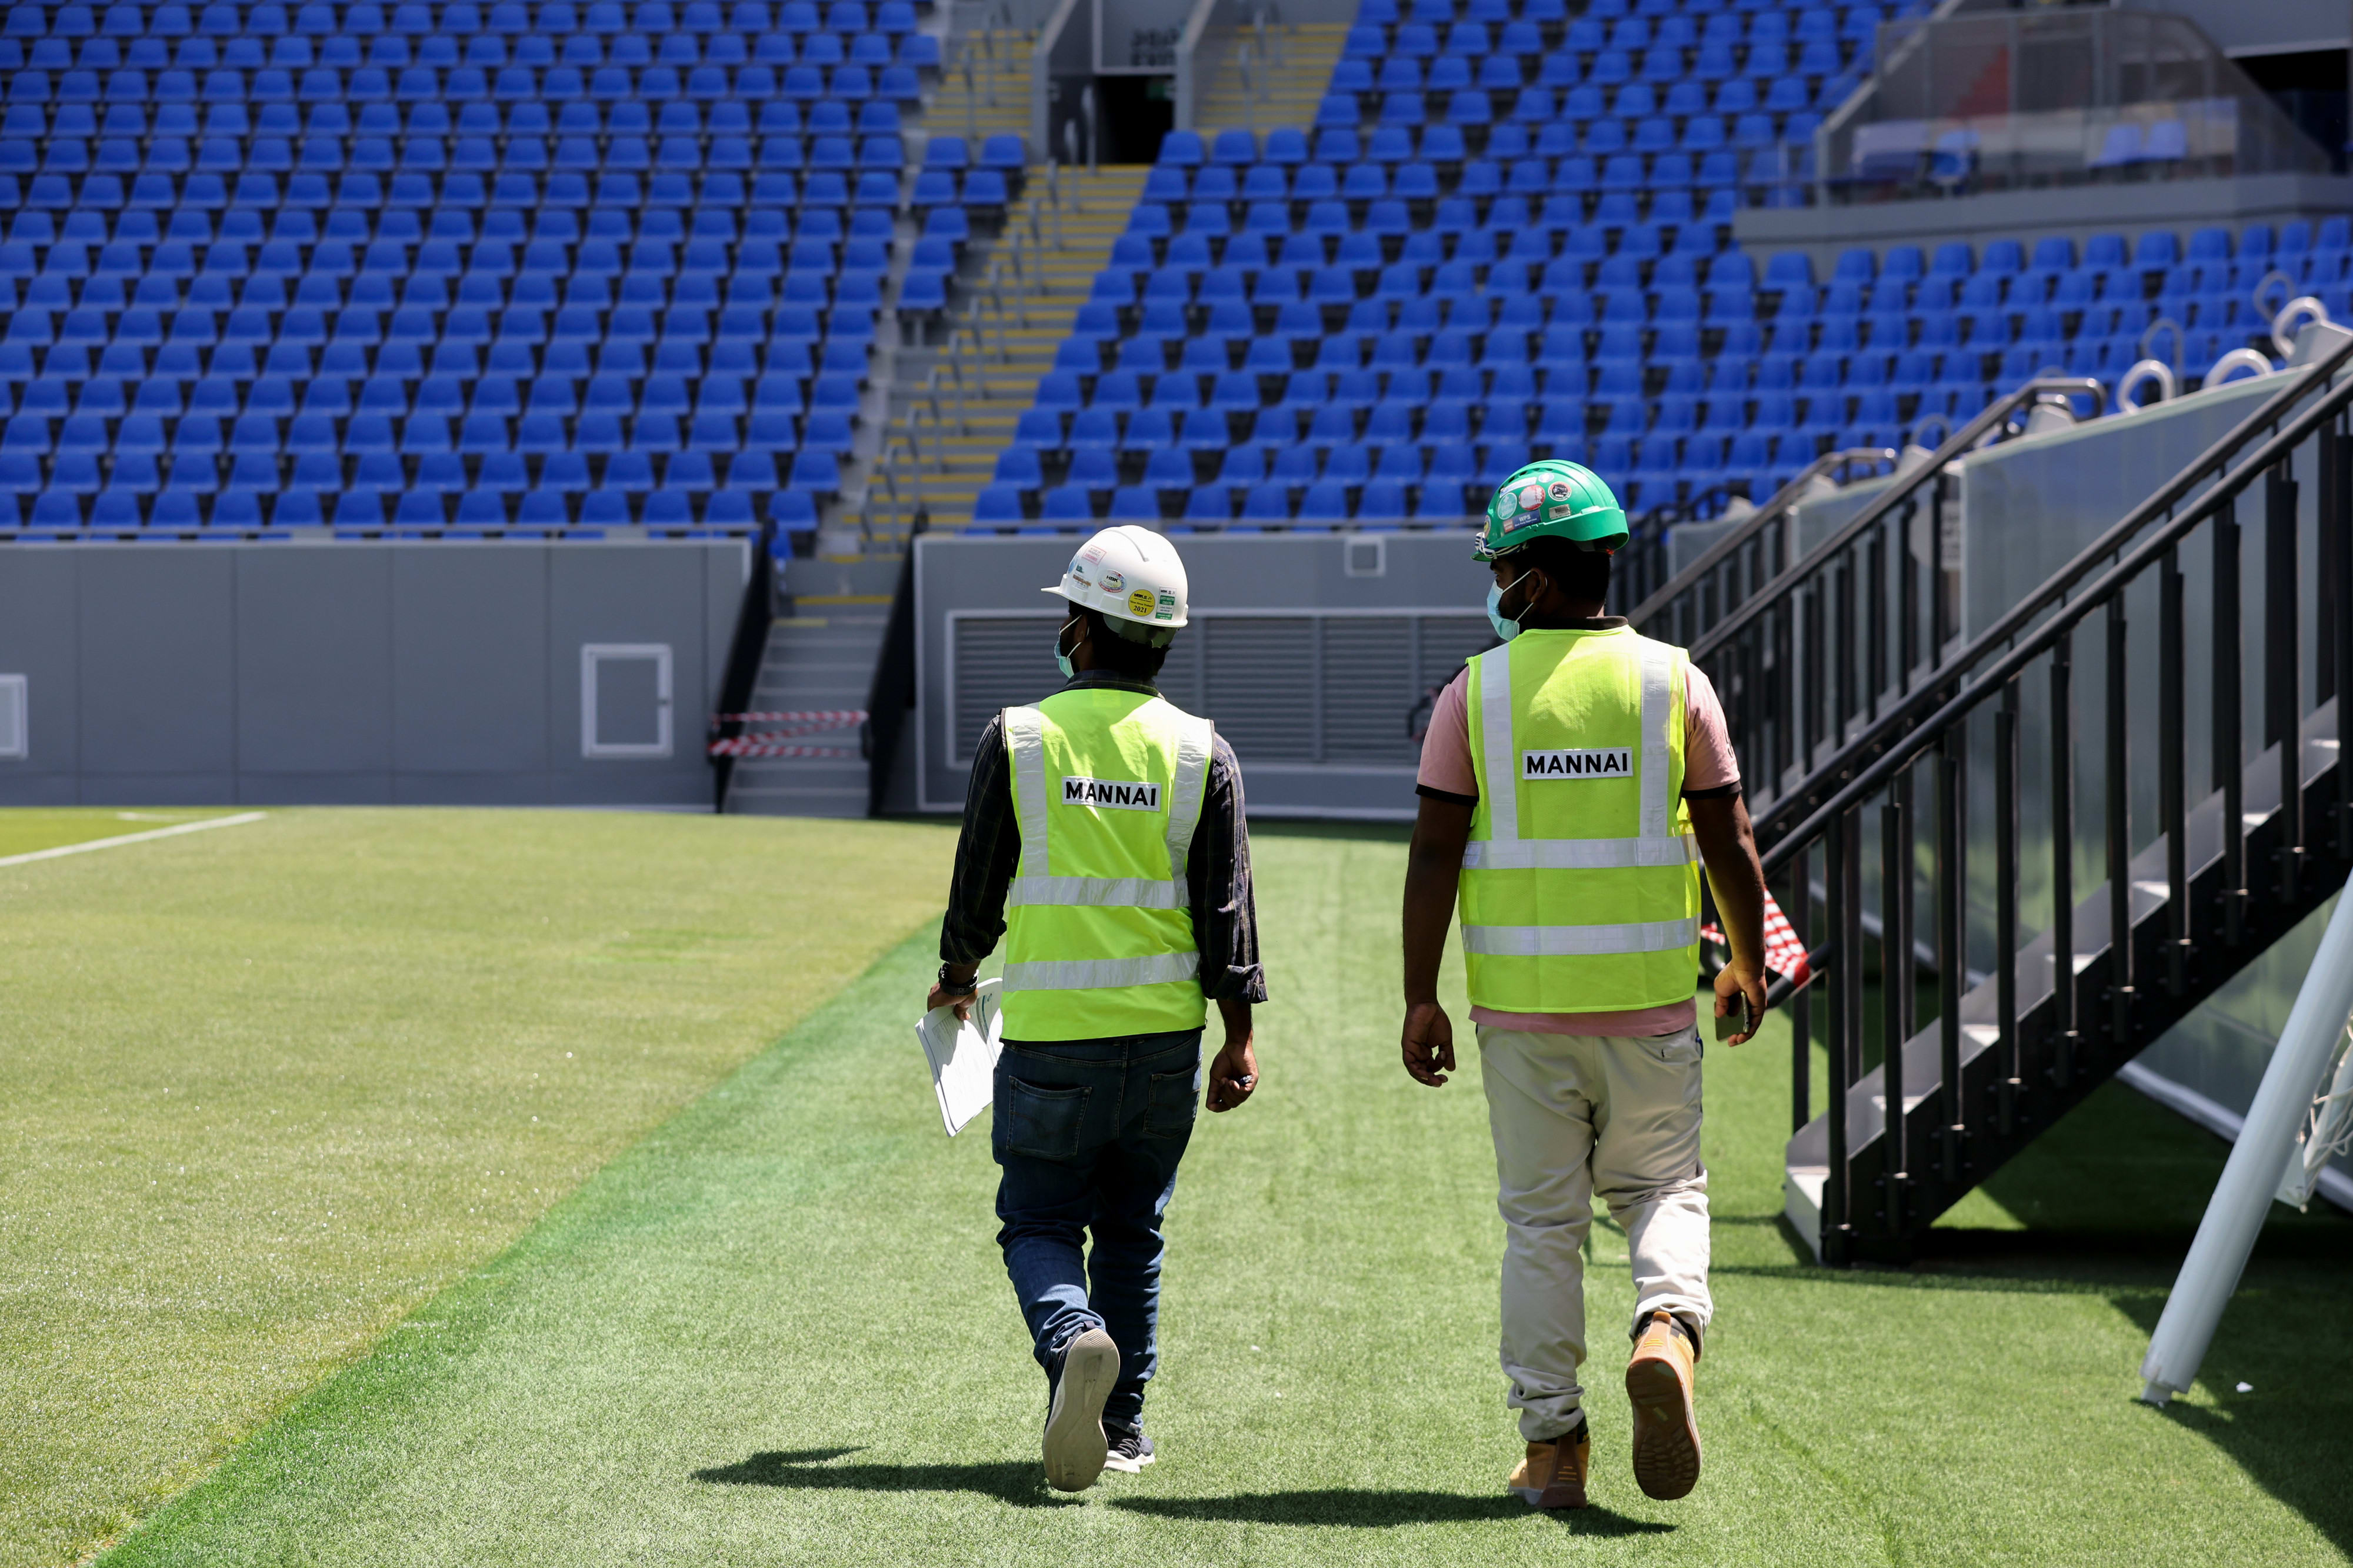 פועלים בונים אצטדיון בדוחא לקראת מונדיאל 2022 בקטאר